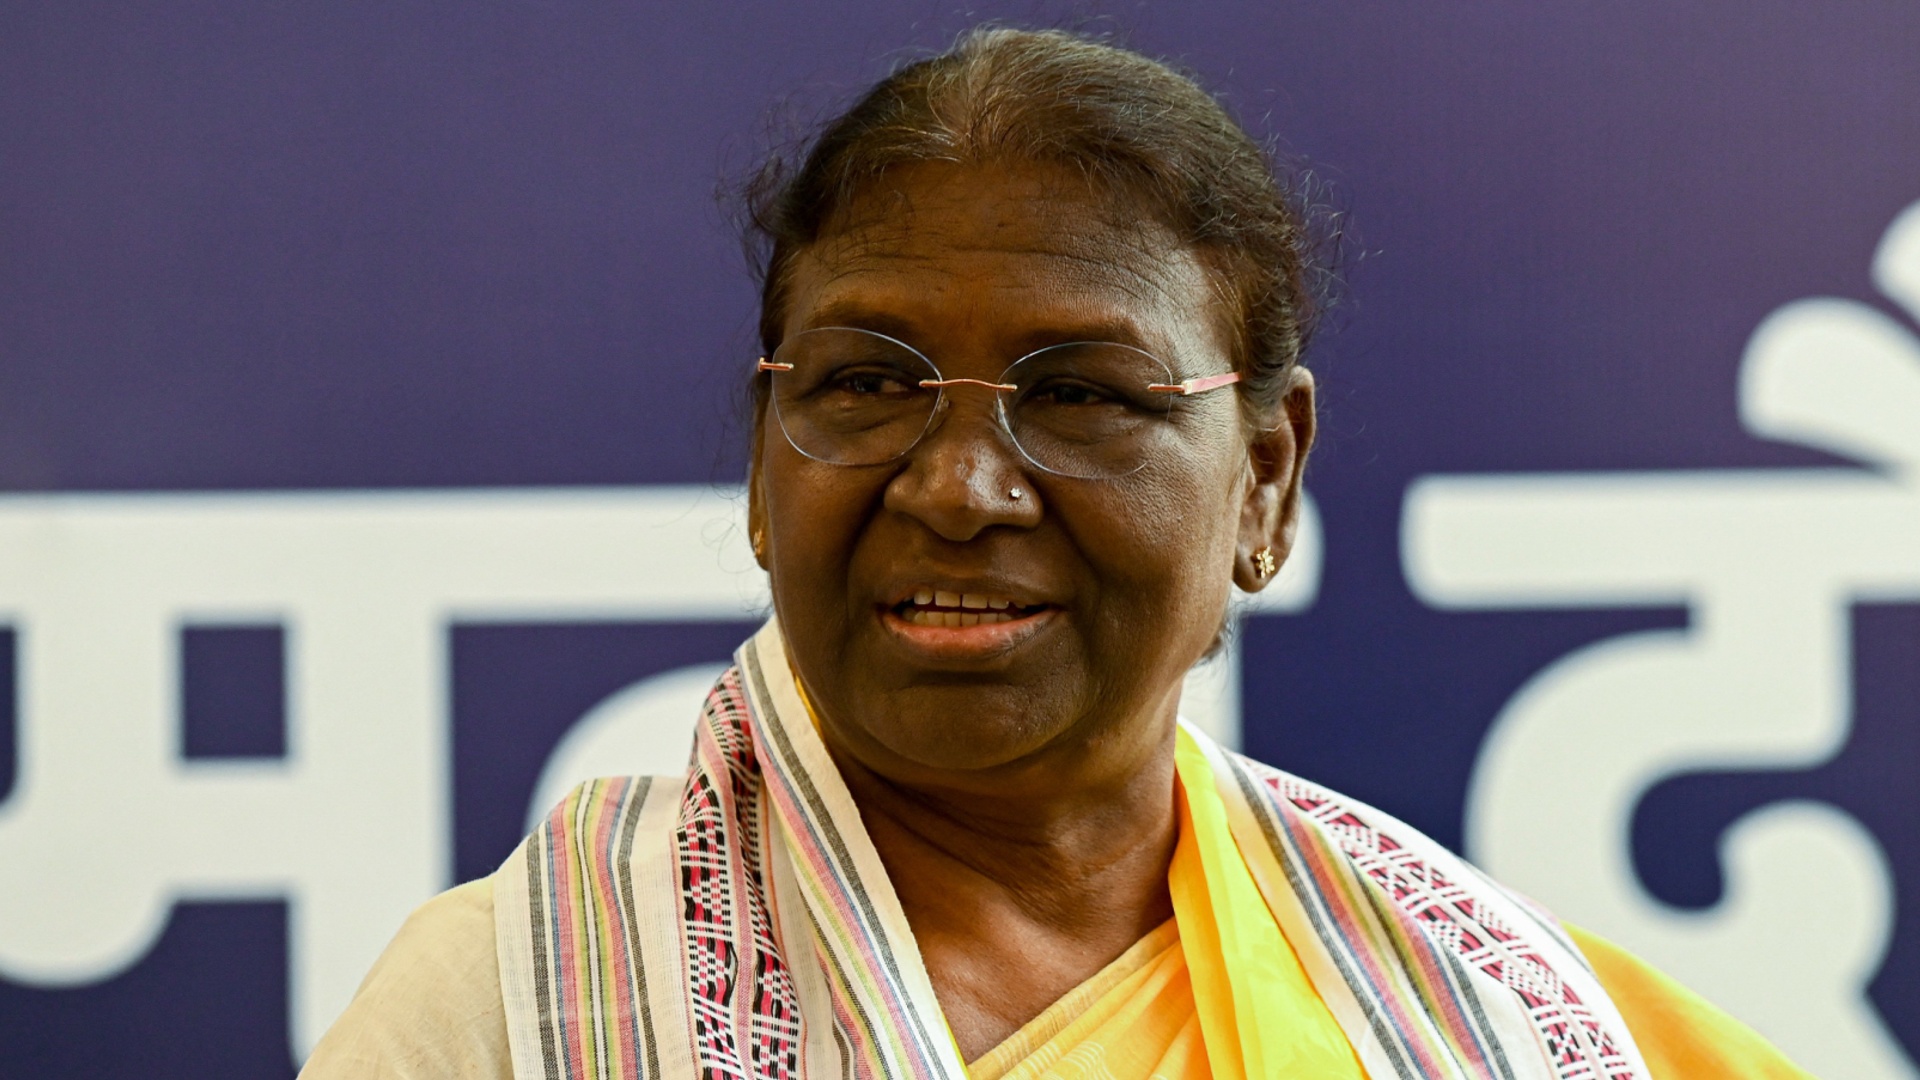 Президентом Индии впервые стала женщина из племенной общины